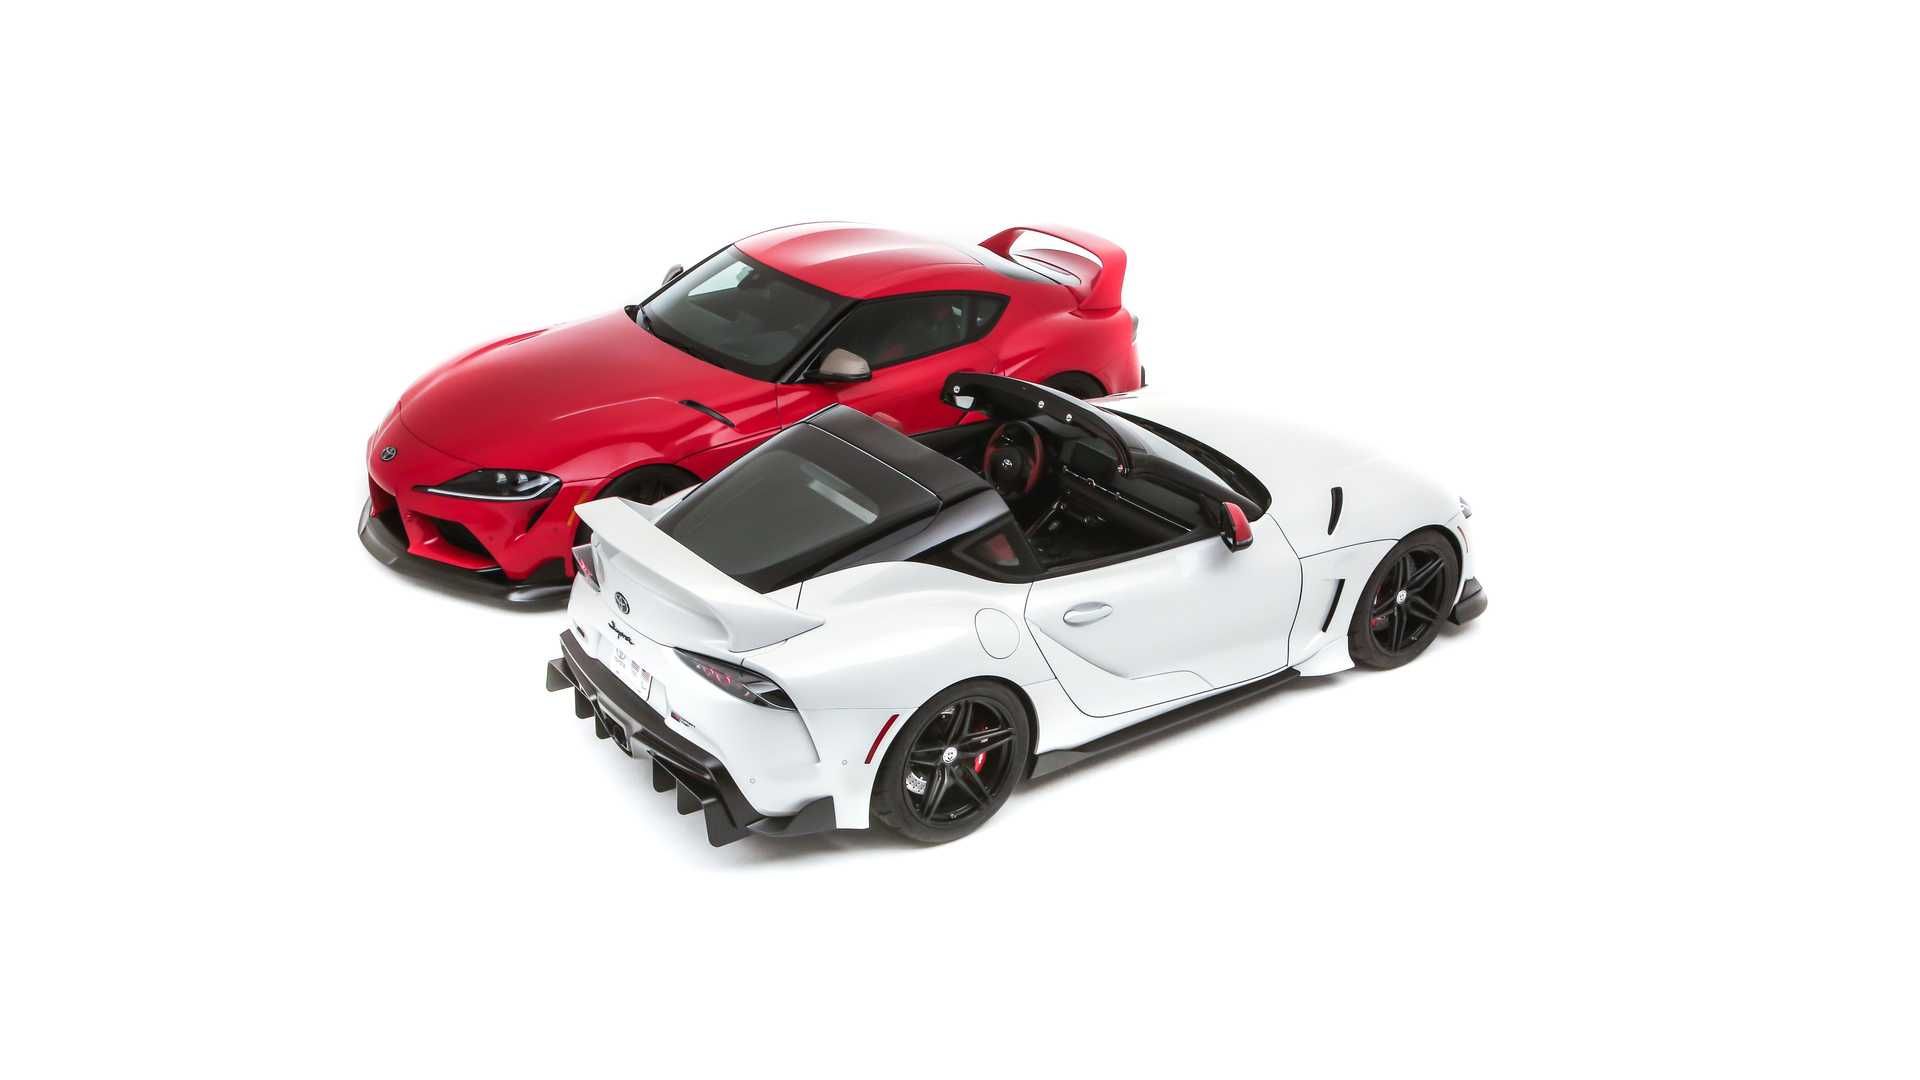 نمای سه چهارم تویوتا GR سوپرا اسپرت تاپ / Toyota GR Supra Sport Top سفید رنگ و مدل قرمز رنگ هریتیج ادیشن